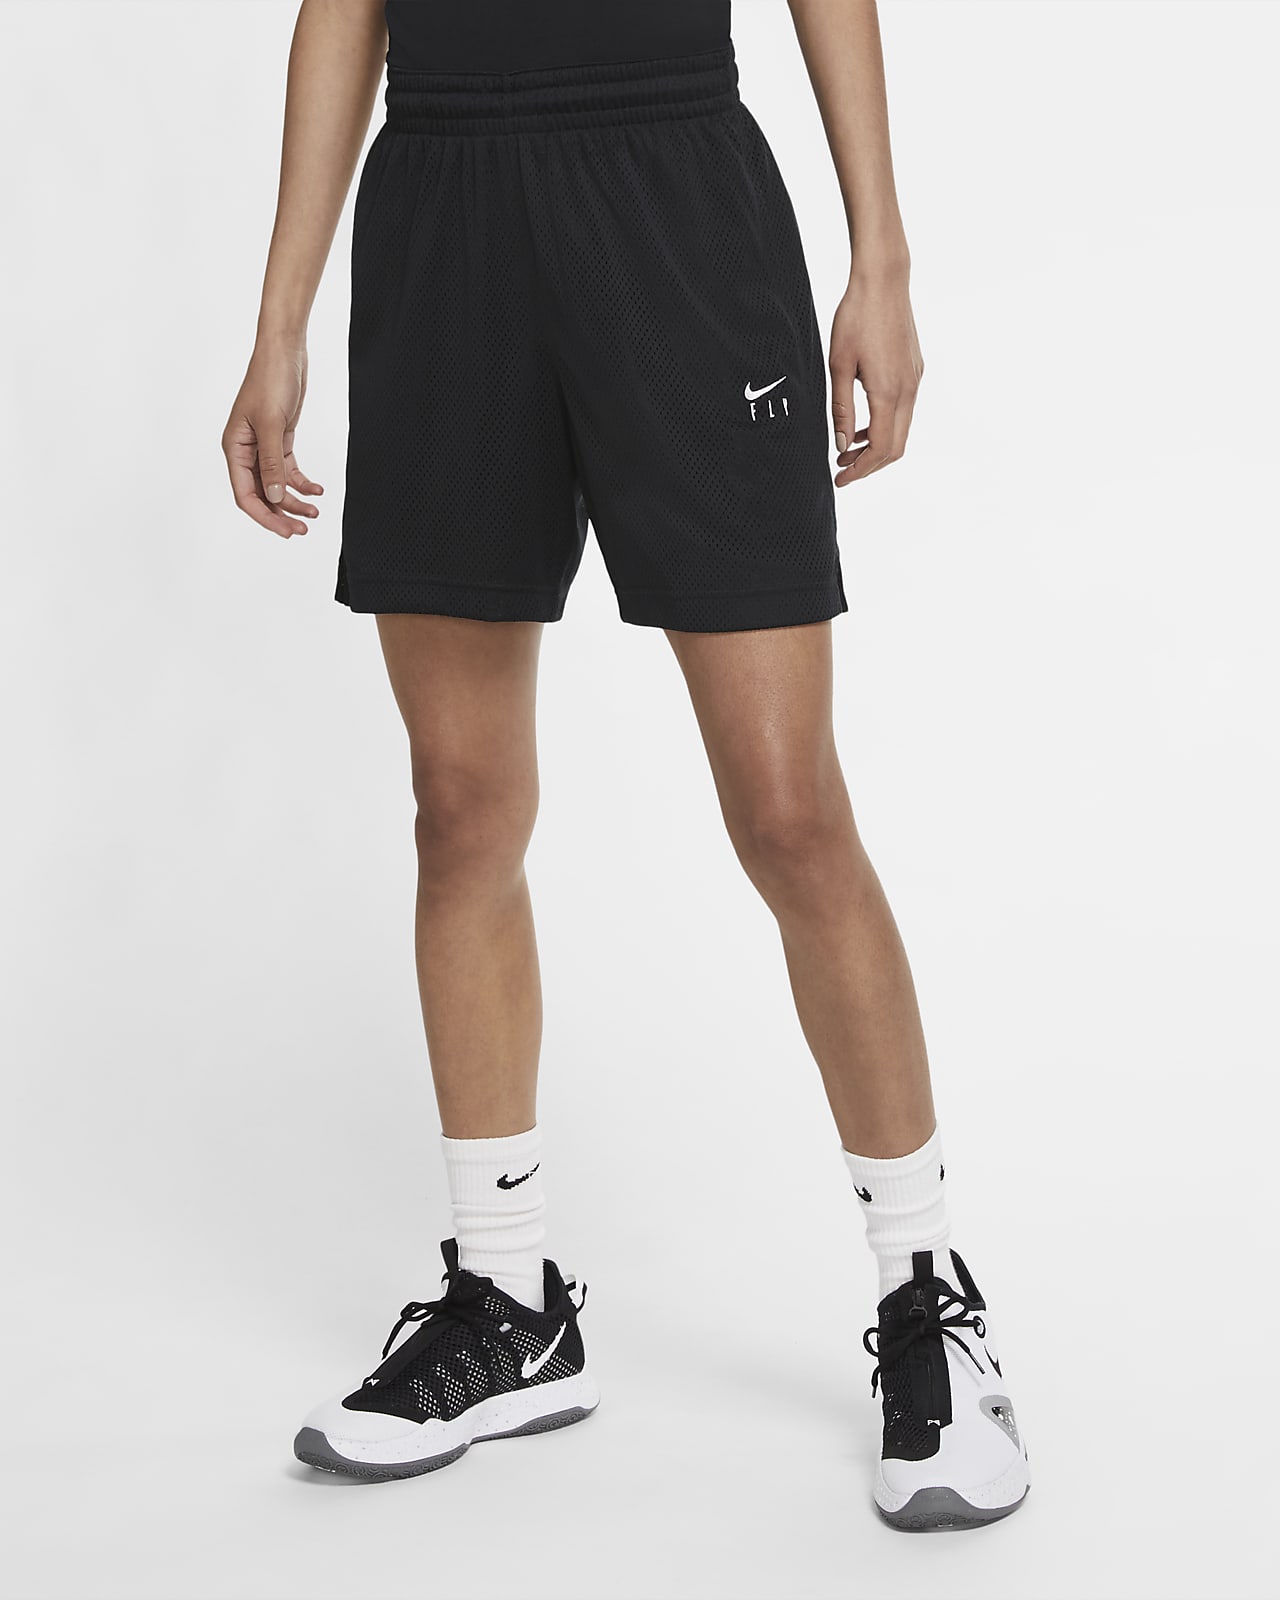 Nike Swoosh Fly Women's Basketball Shorts. Nike LU